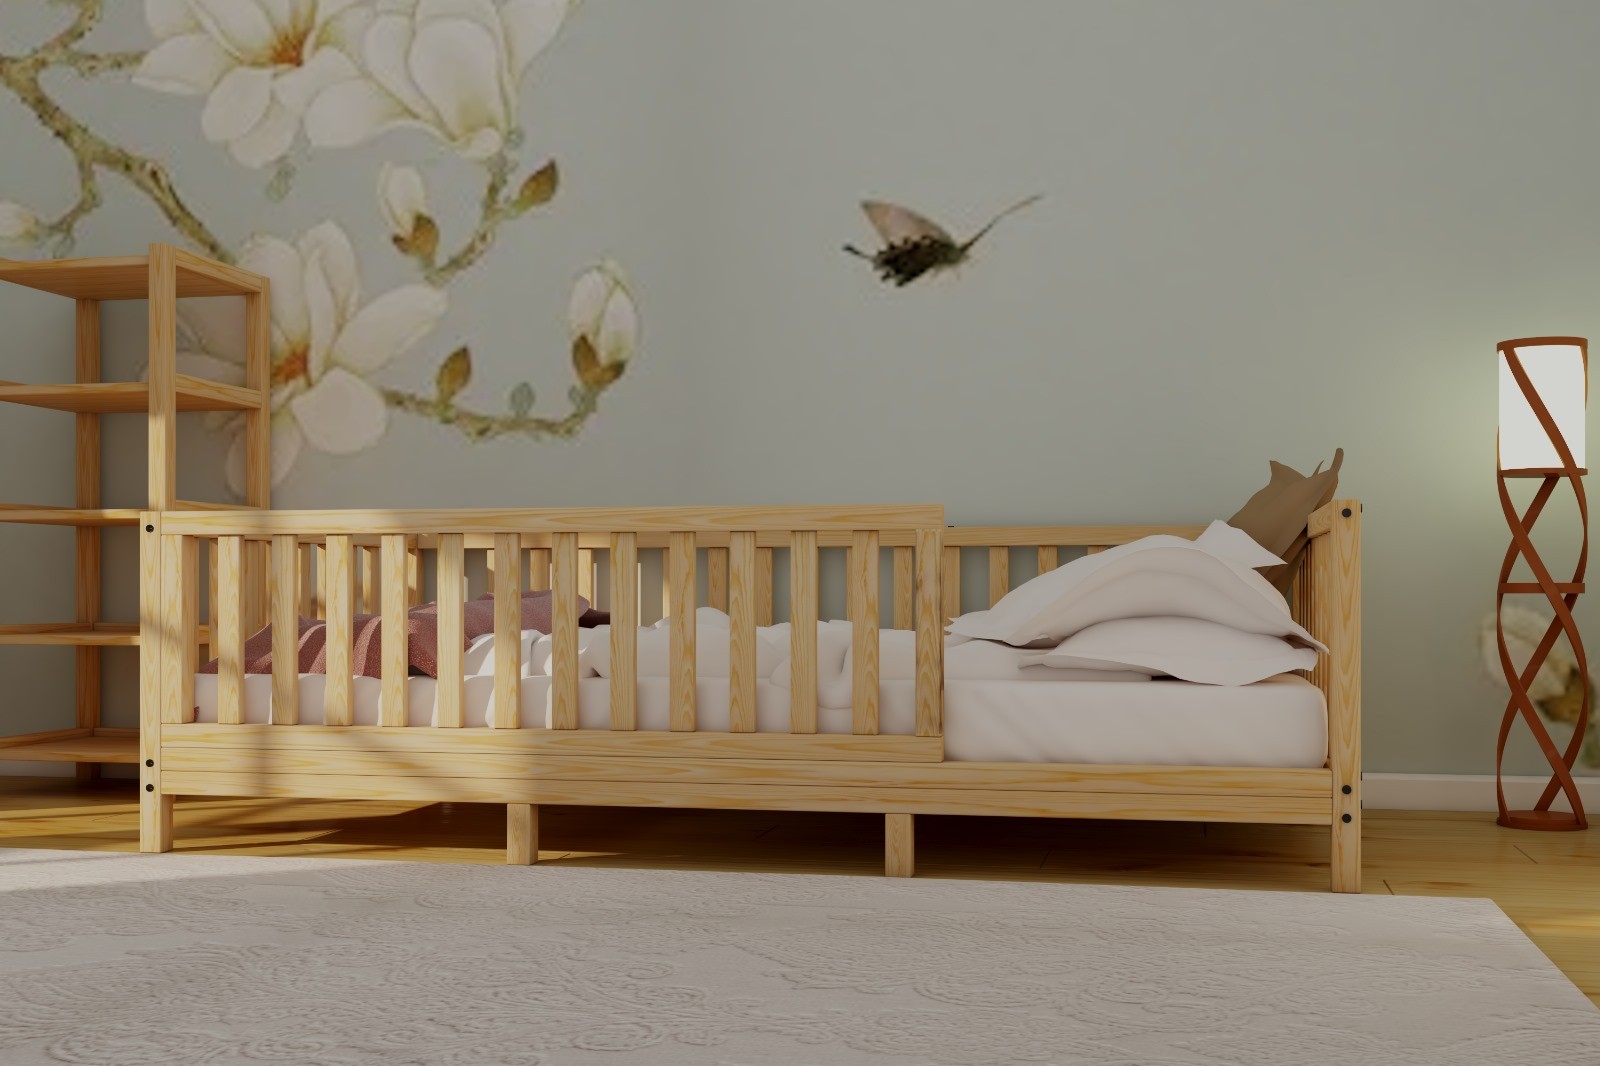 Oyun ve Uyku Alanı: Montessori Yatak, Kanepe Çift Kullanım